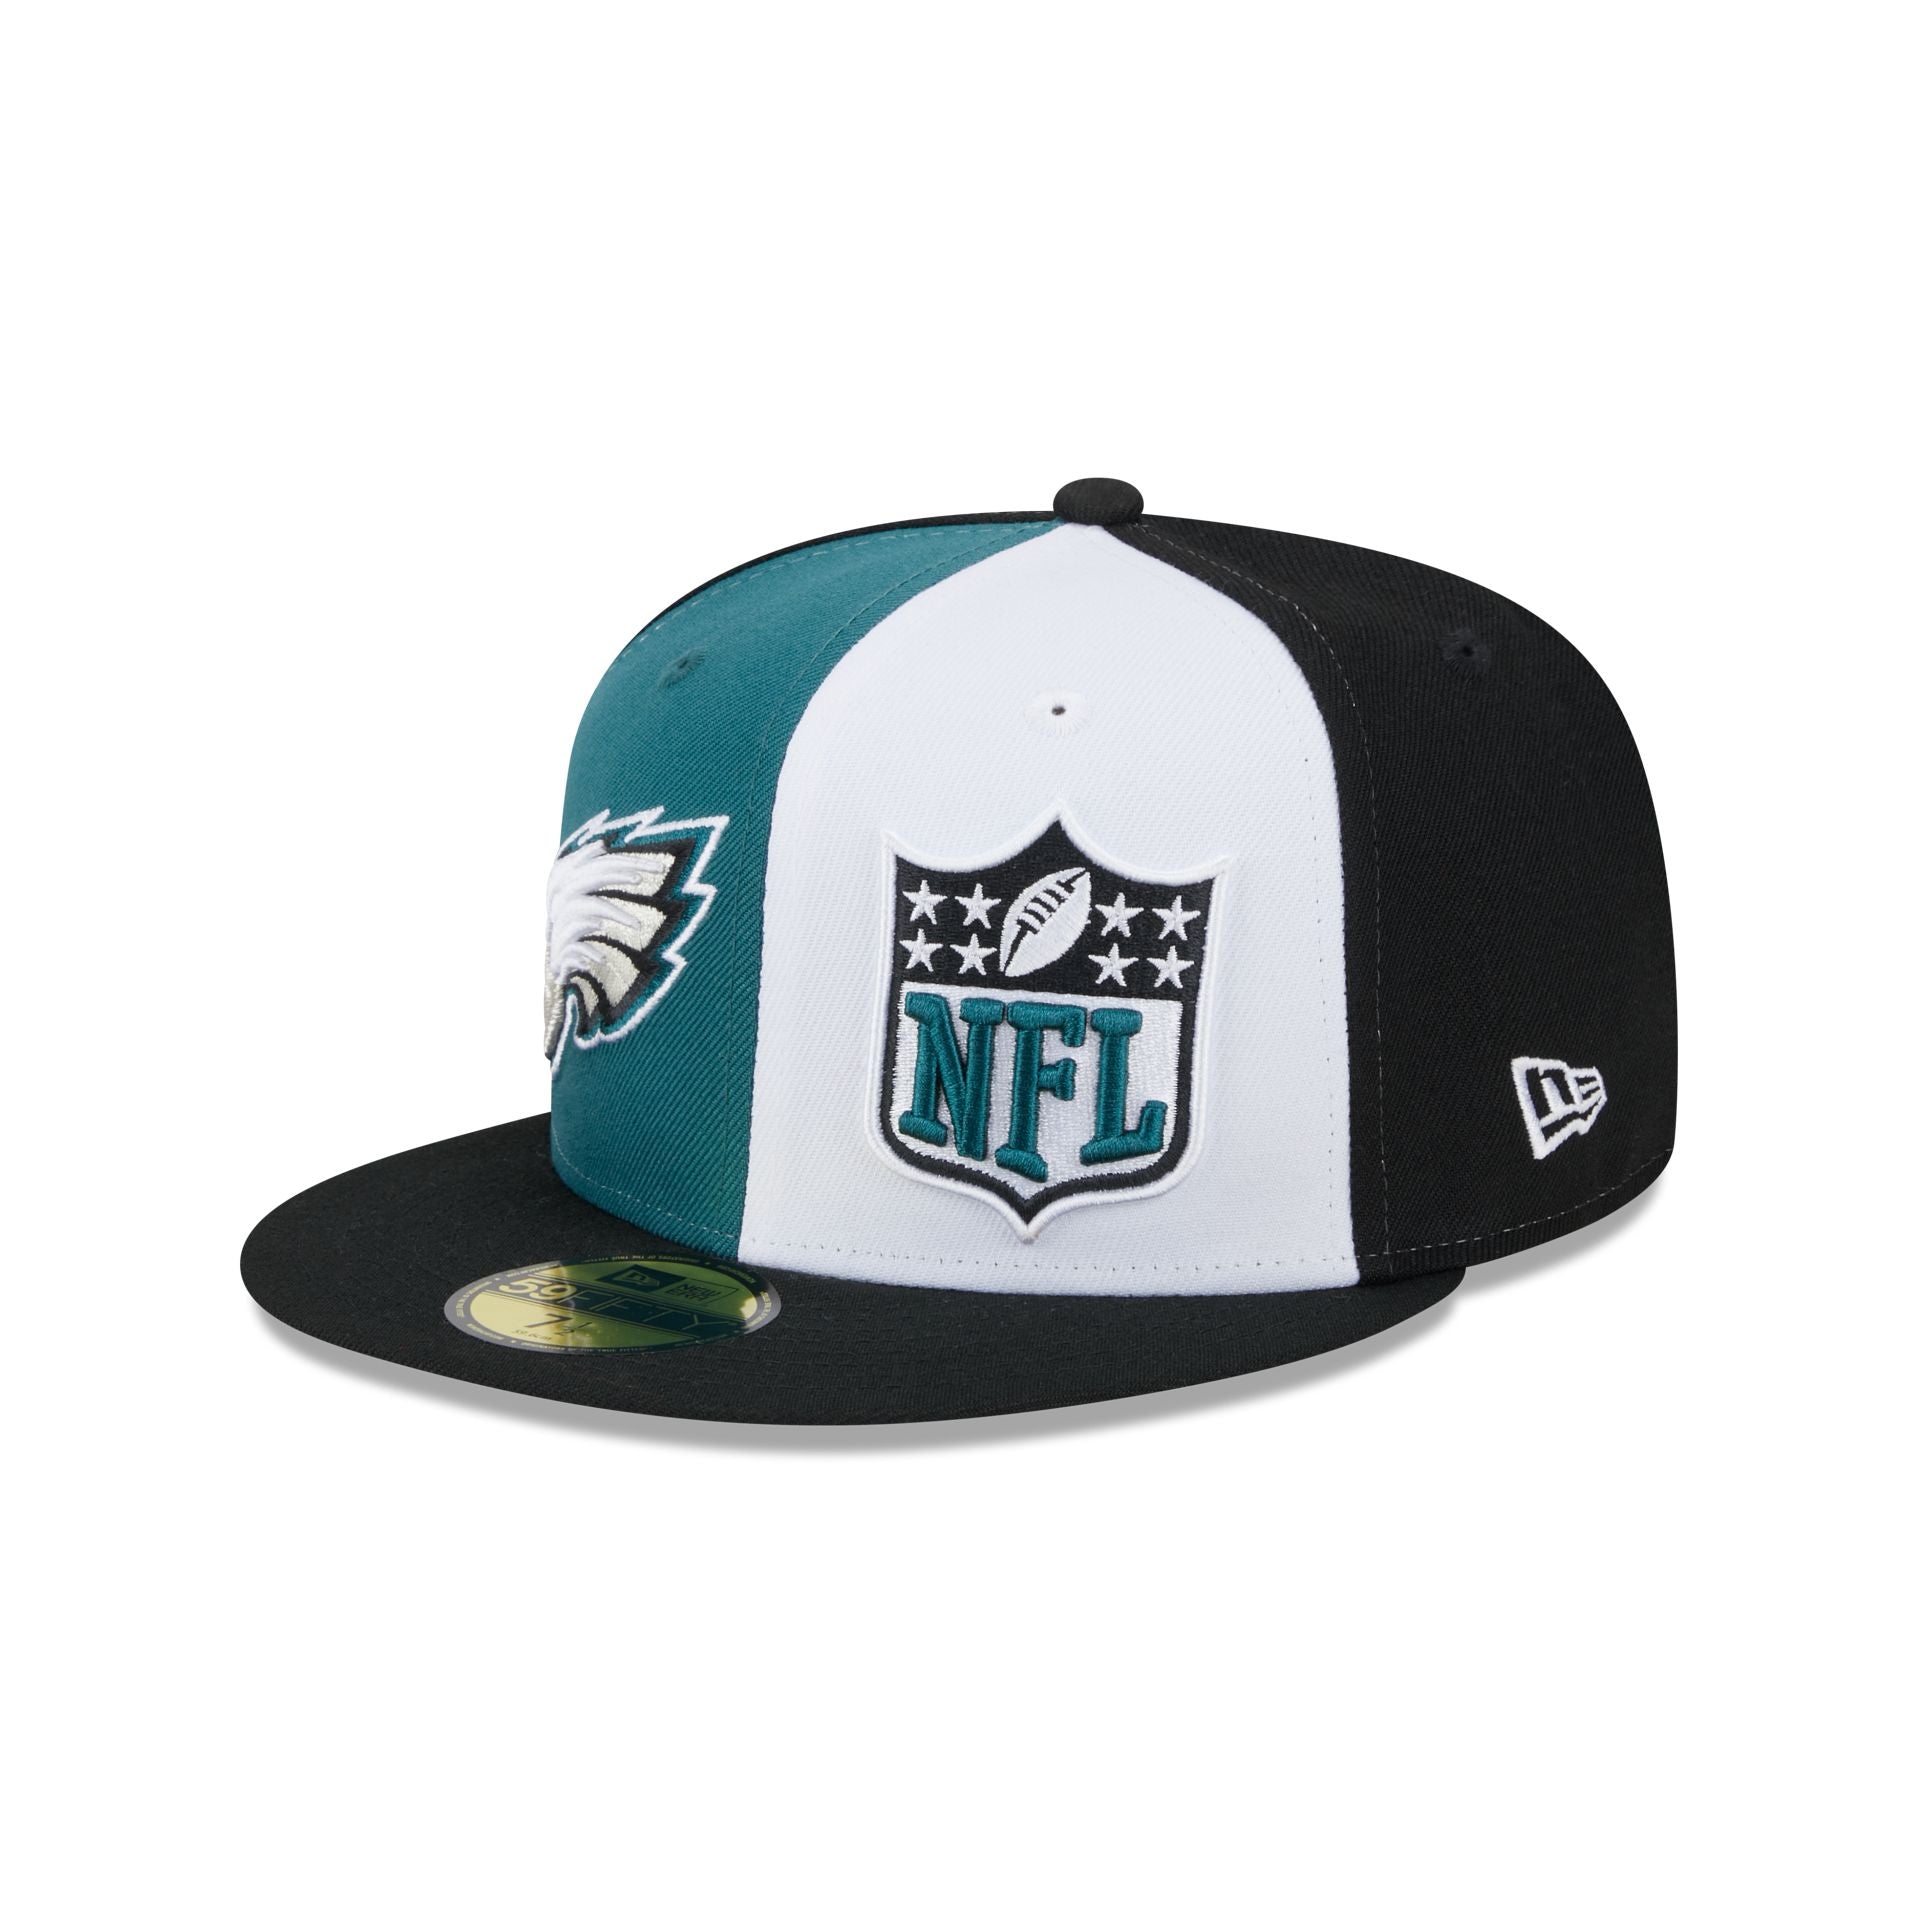 Philadelphia Eagles Hats  Shop Eagles New Era Hats & More